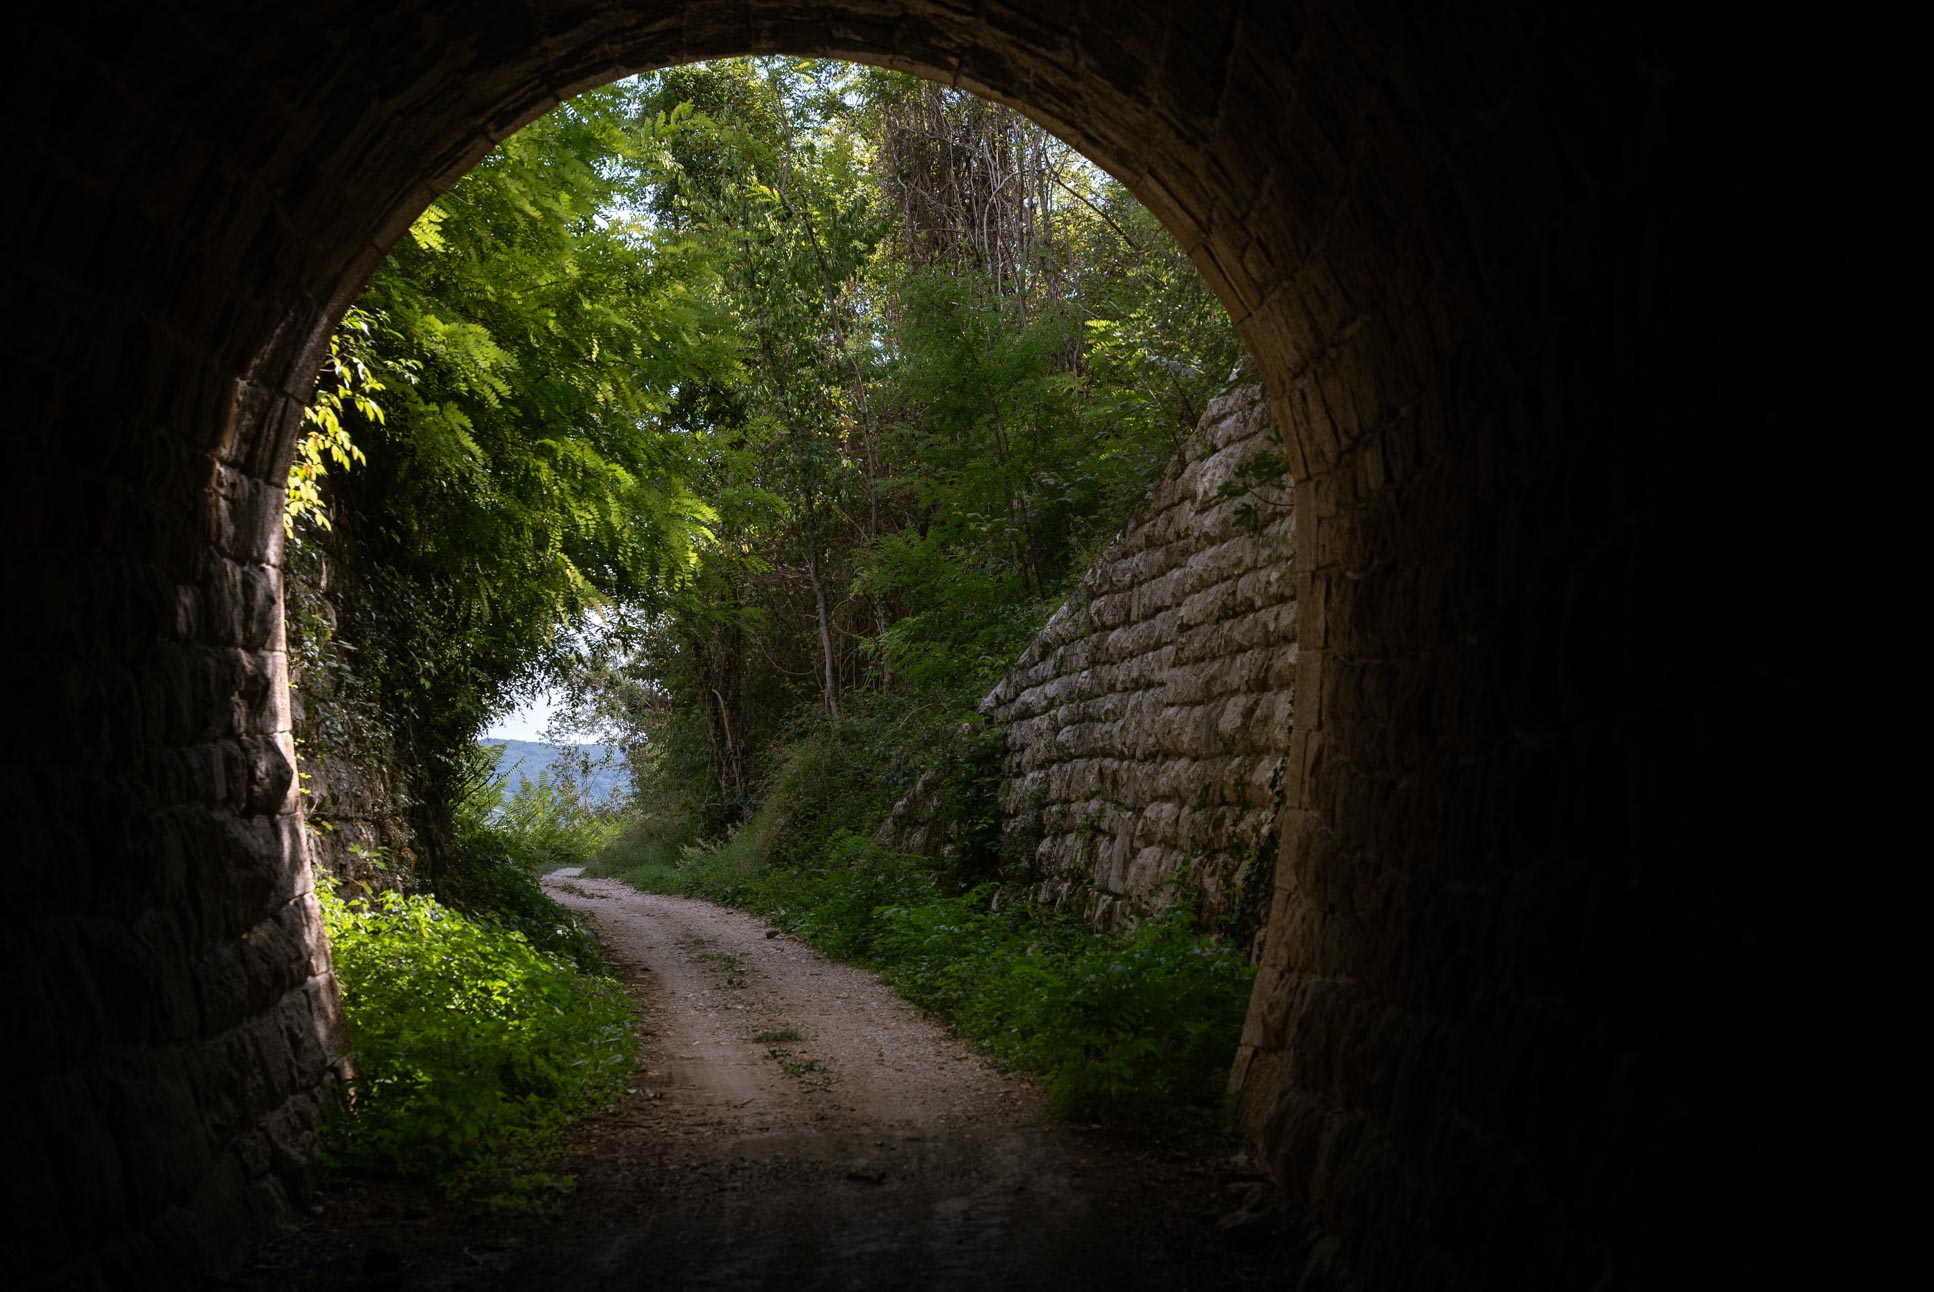 cycling through a former railway tunnel